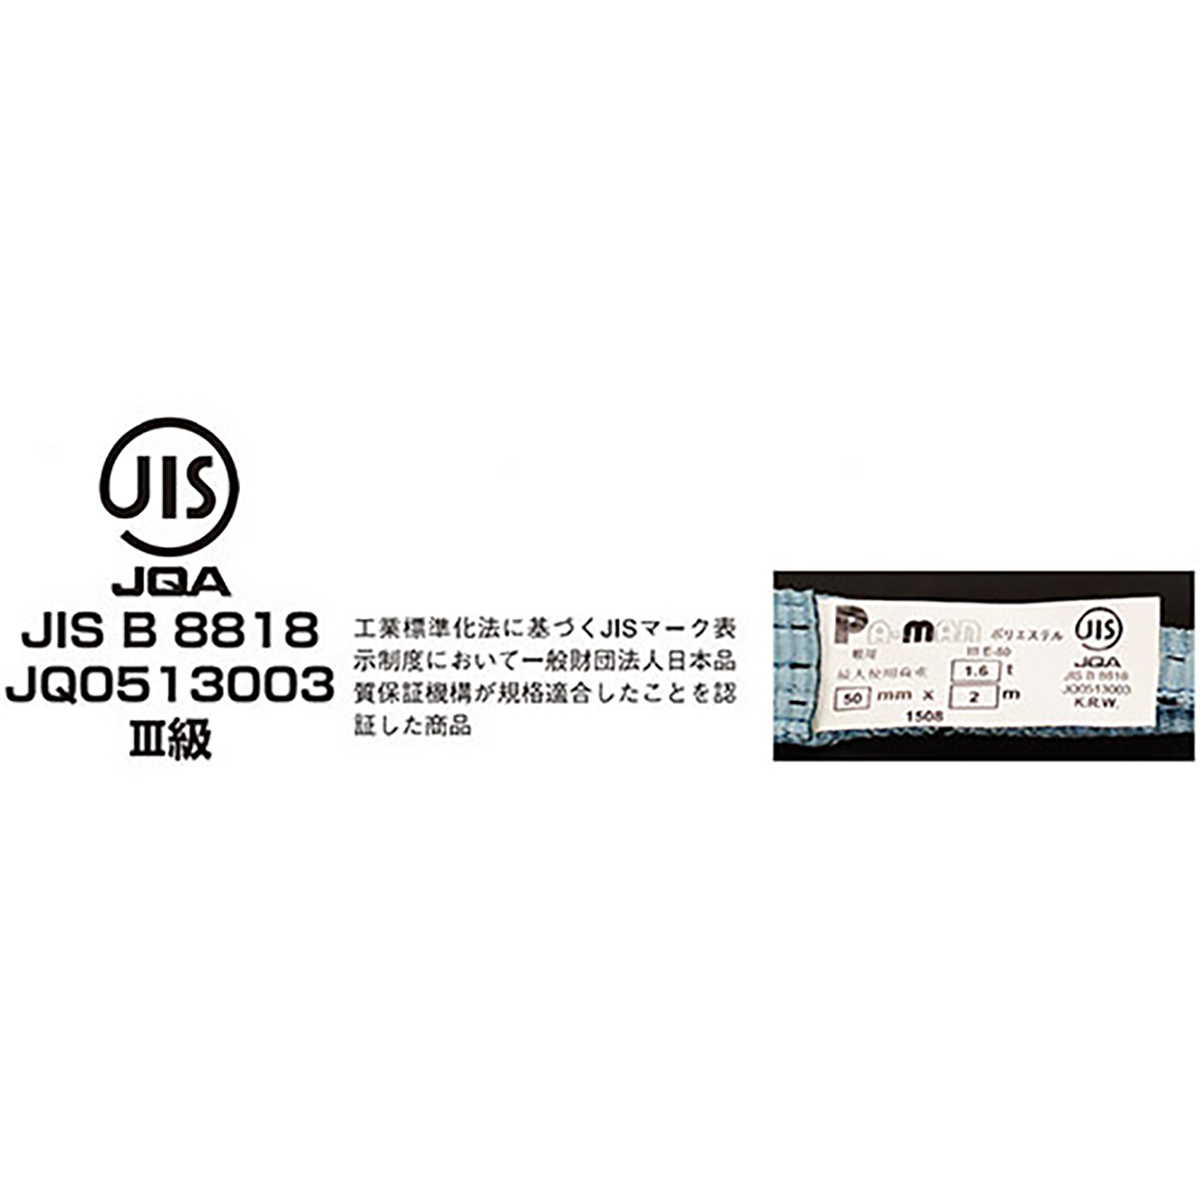 ポリベルトスリング JIS III級 ソフト面付 巾50mm 5.5m 1本